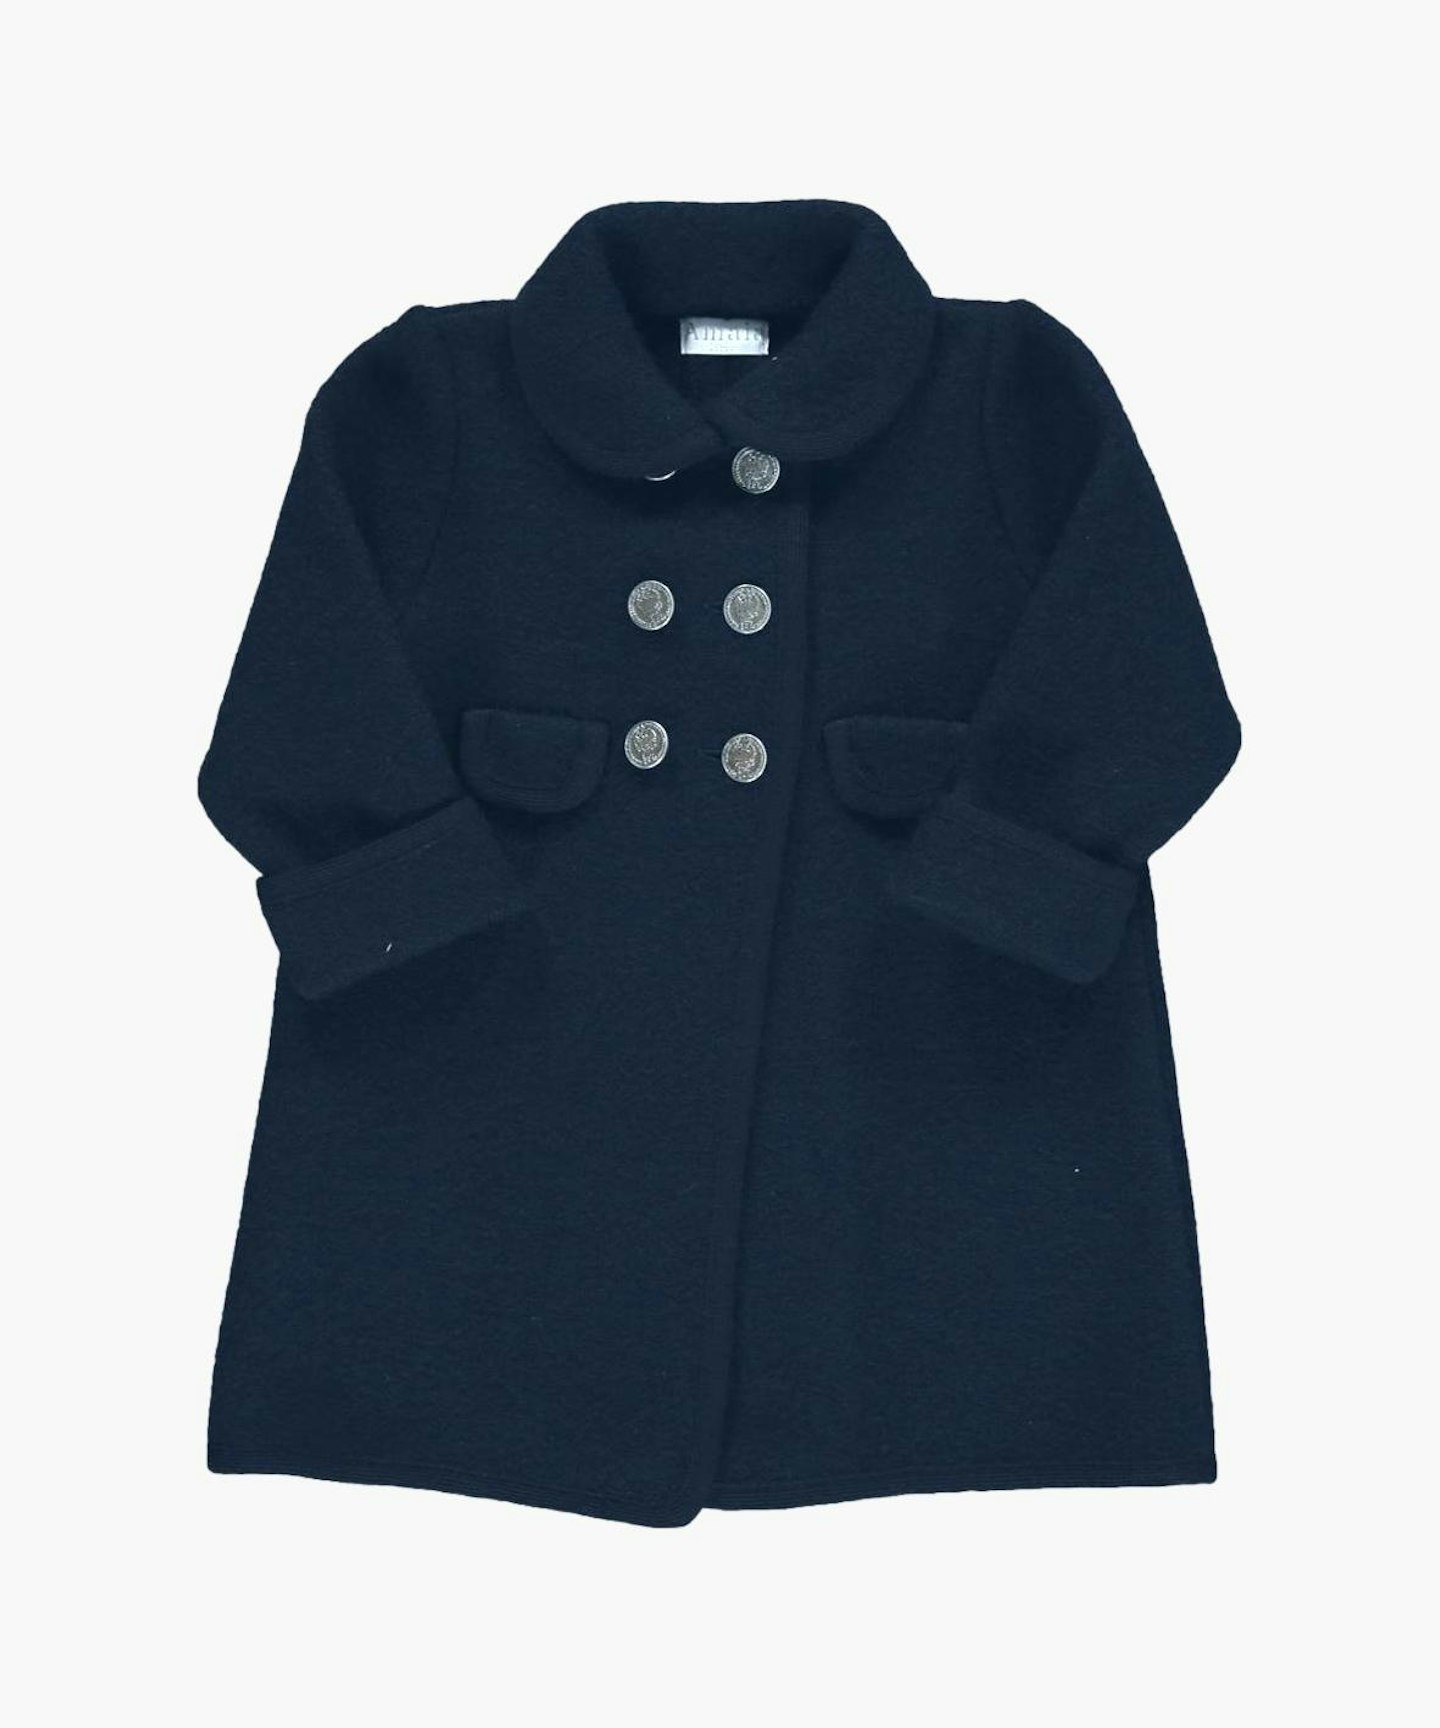 Amaia Kids, Razorbil Navy Coat, £140